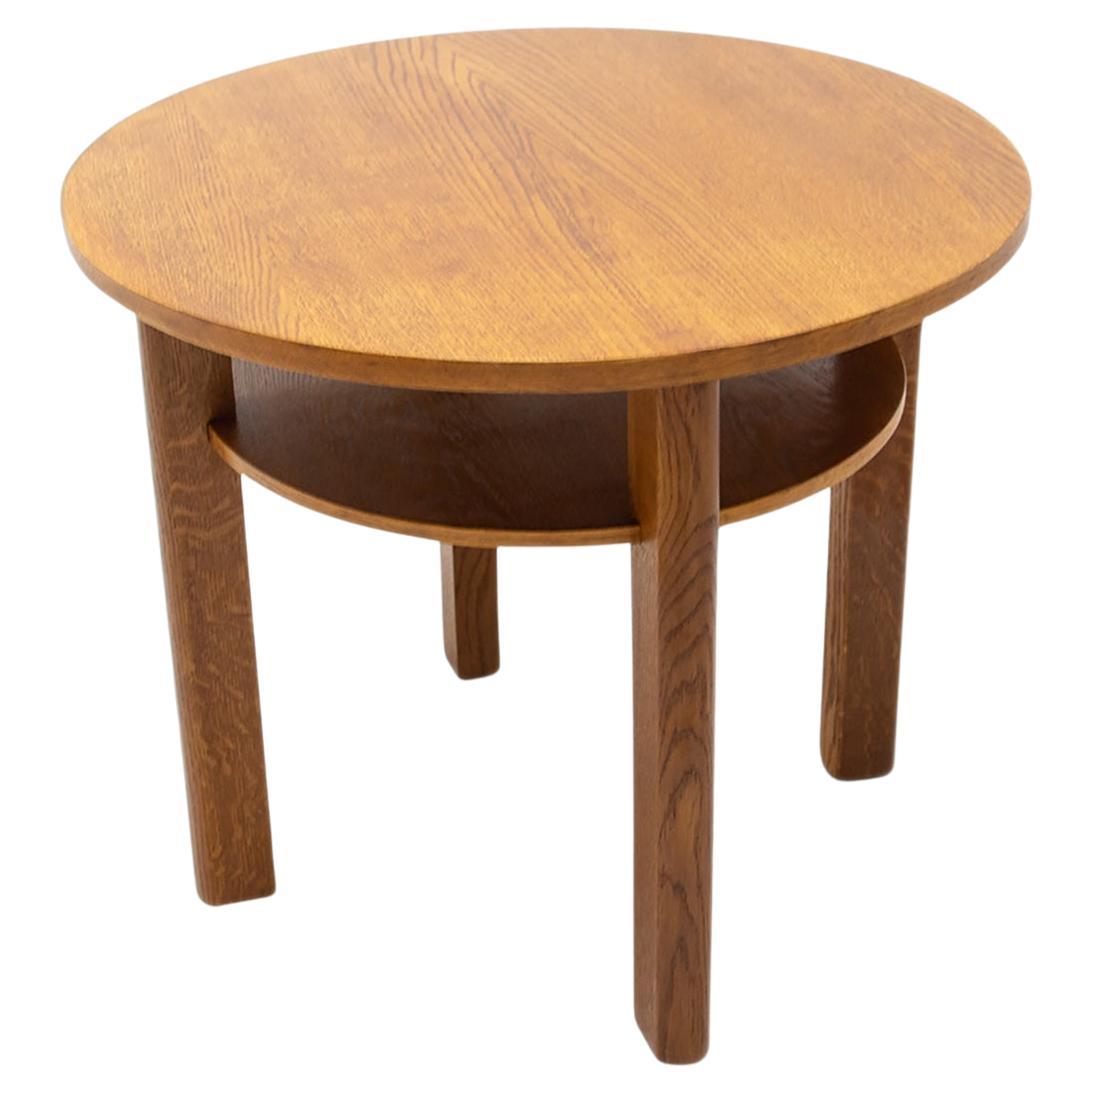 Fully Restored Oak Wood Coffee Table, 1950s, Czechoslovakia